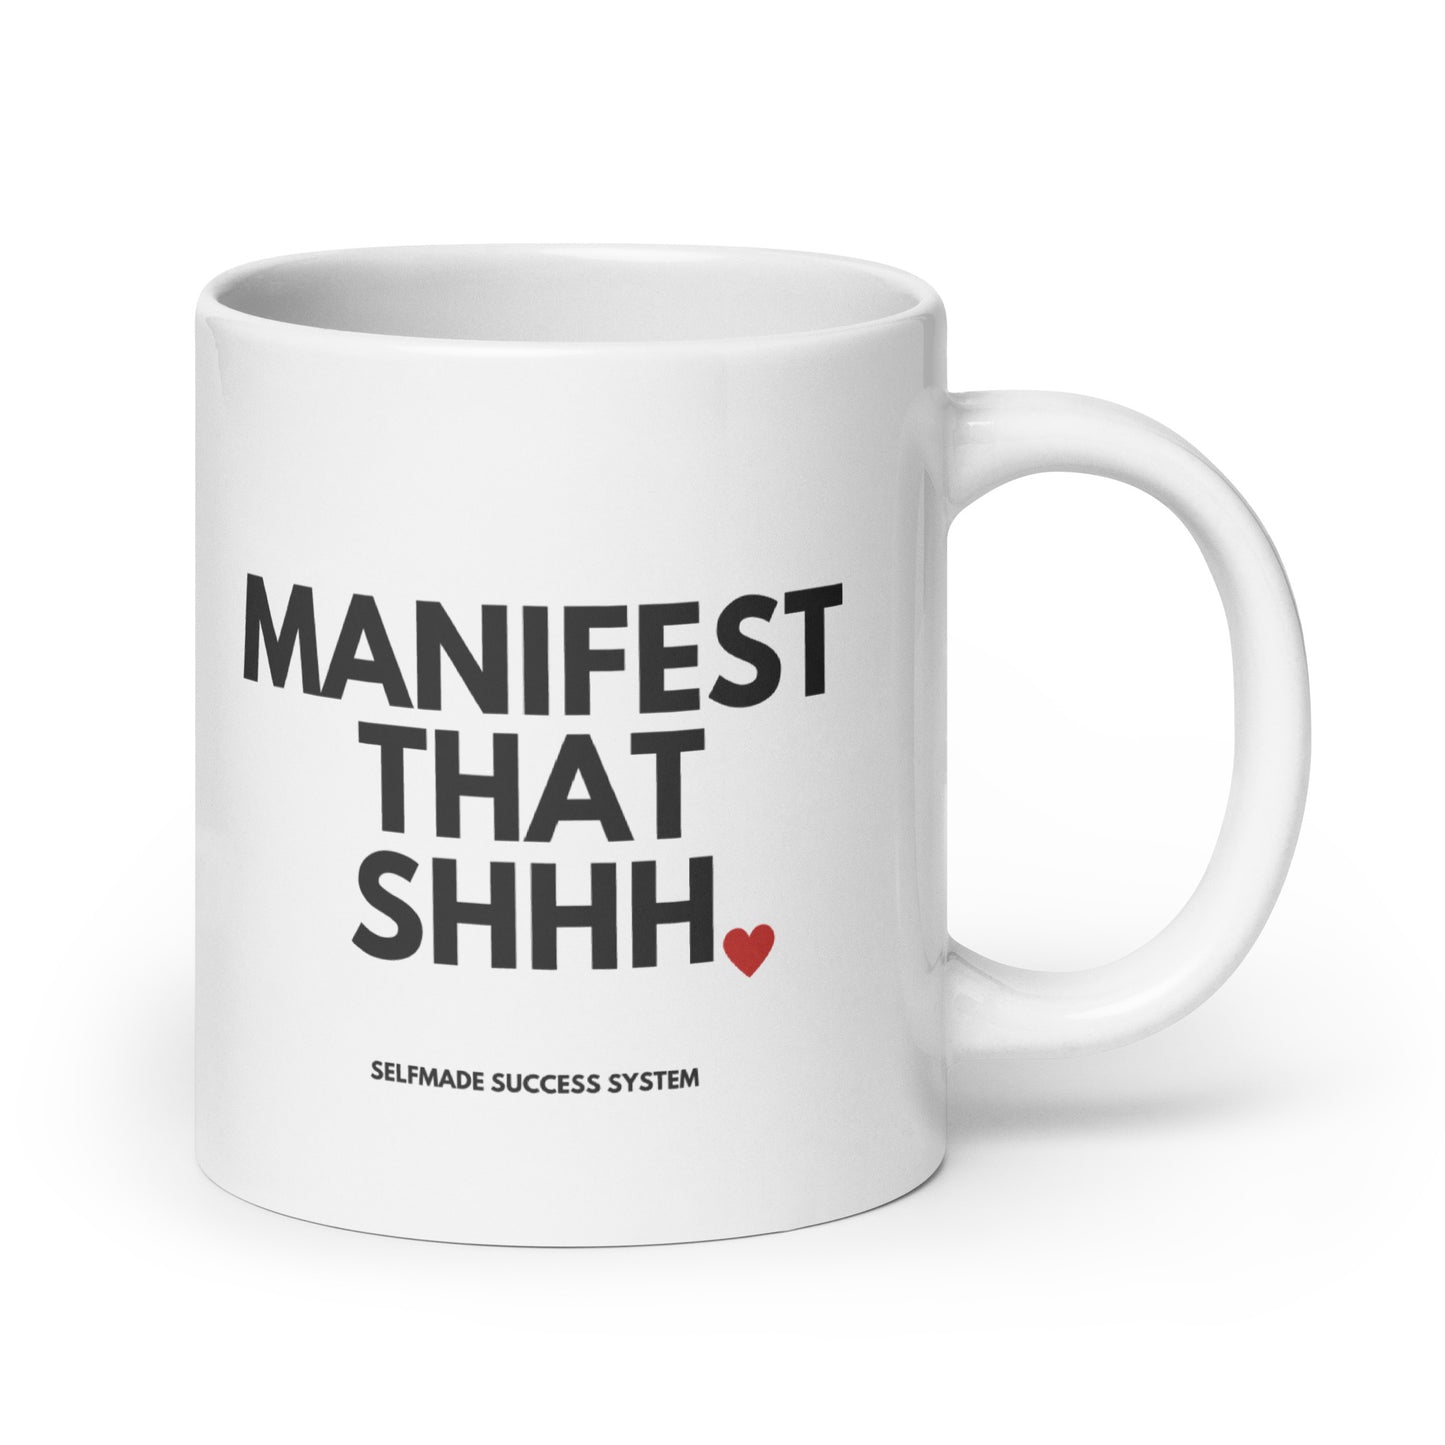 Manifest That Shhh Mug